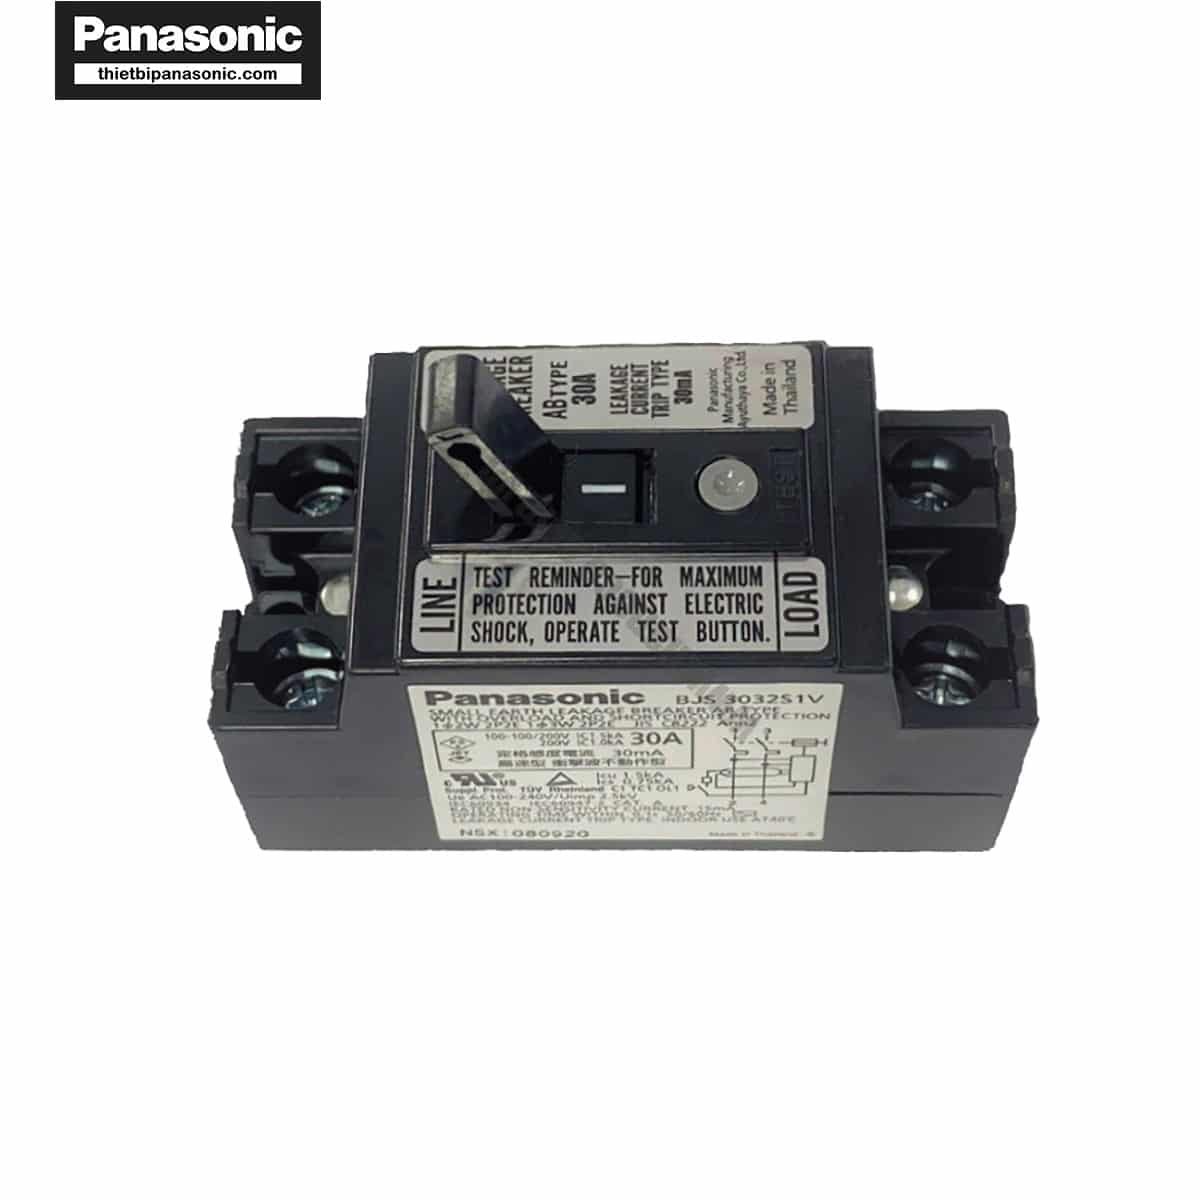 ELB Panasonic BJS3032S1V 30A 1.5kA 30mA giúp bảo vệ quá tải, ngắn mạch và chống rò hiệu quả